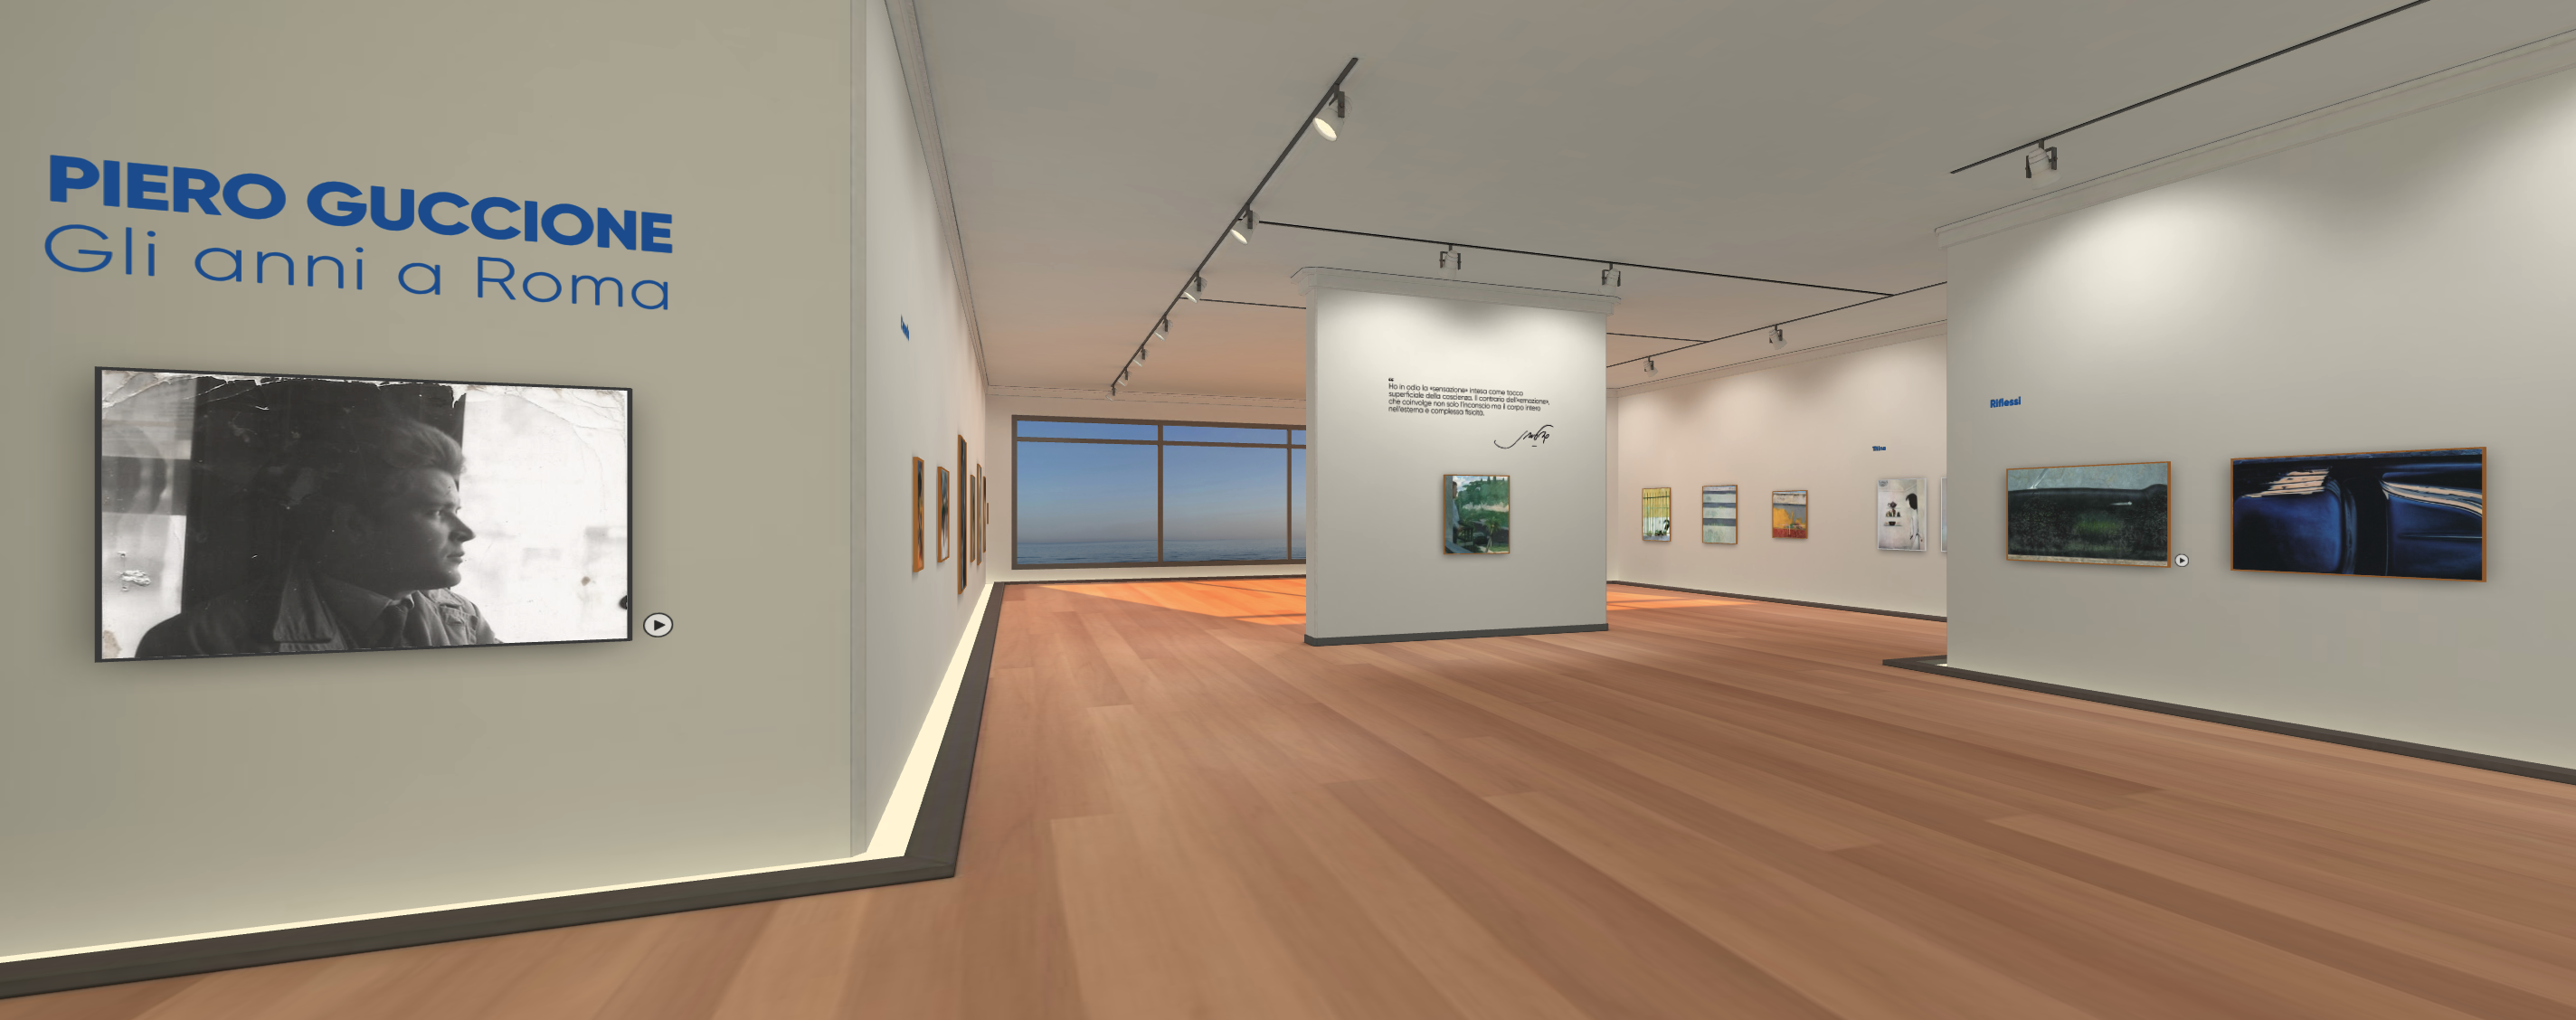 Si inaugura la Galleria Piero Guccione, uno spazio virtuale per ricordate la sua arte